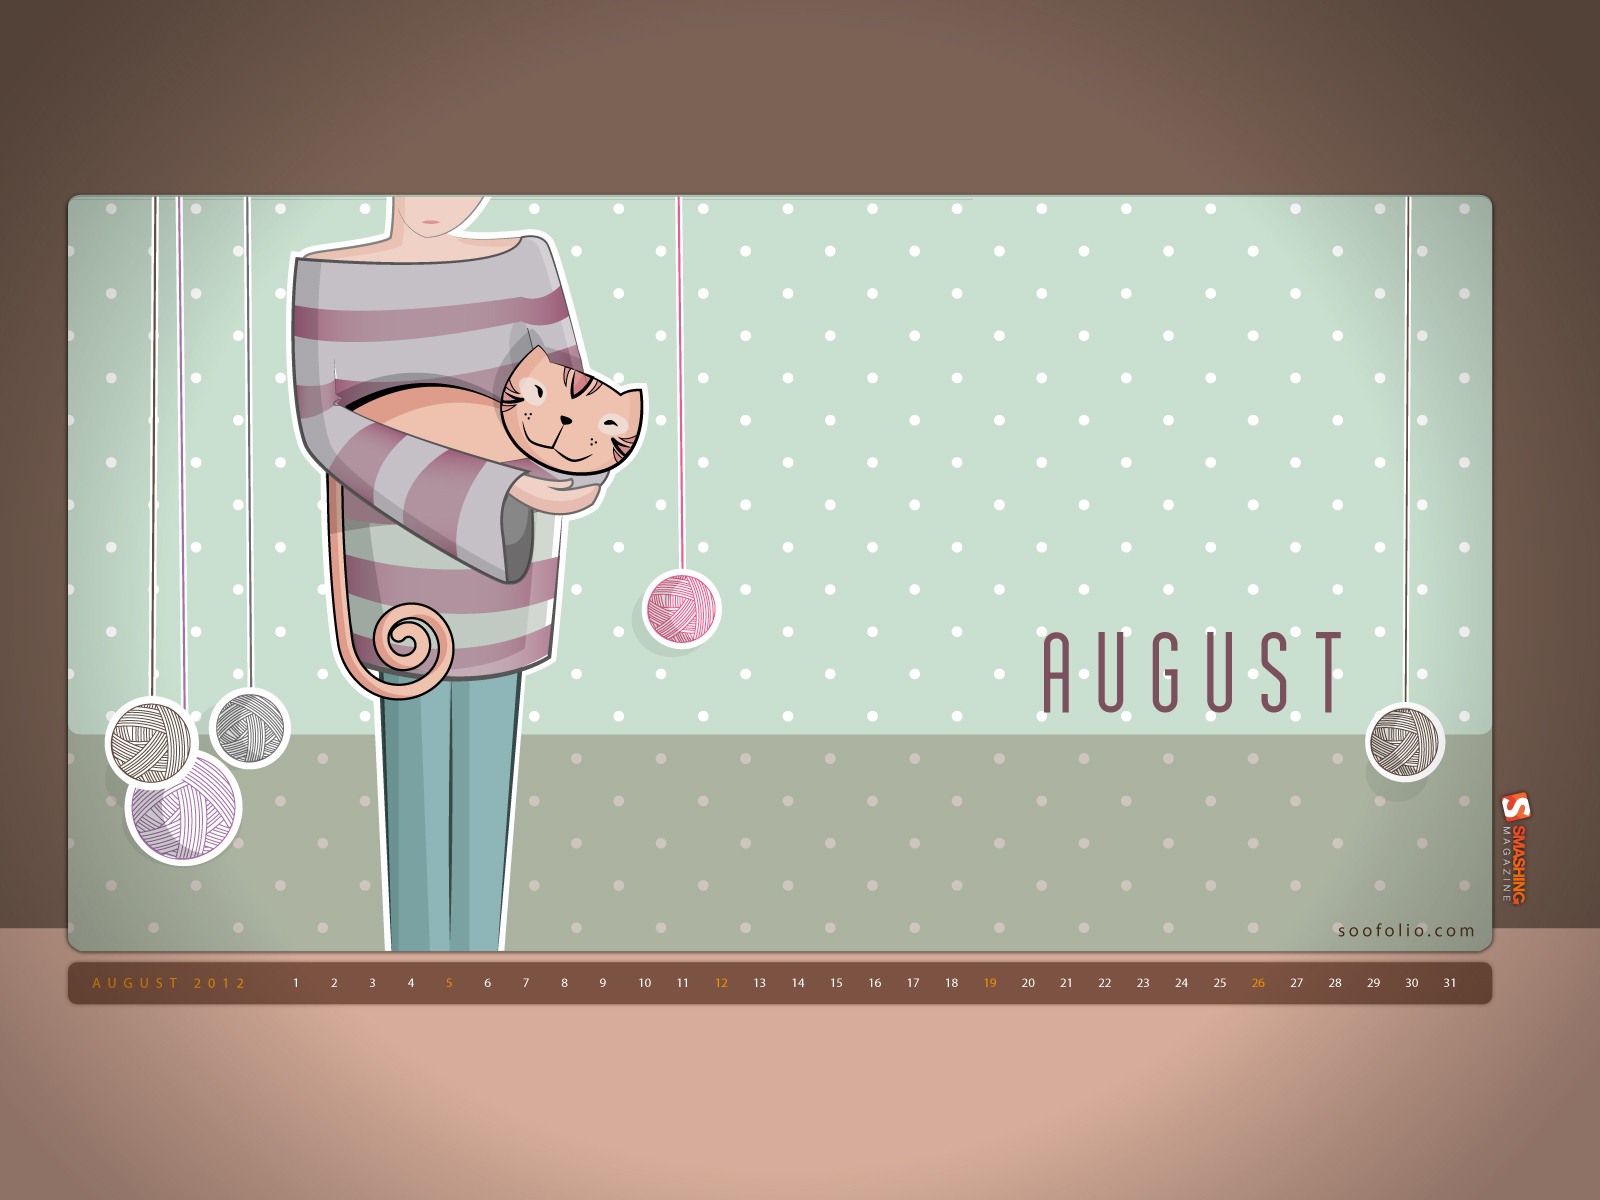 August 2012 Calendar wallpapers (1) #12 - 1600x1200